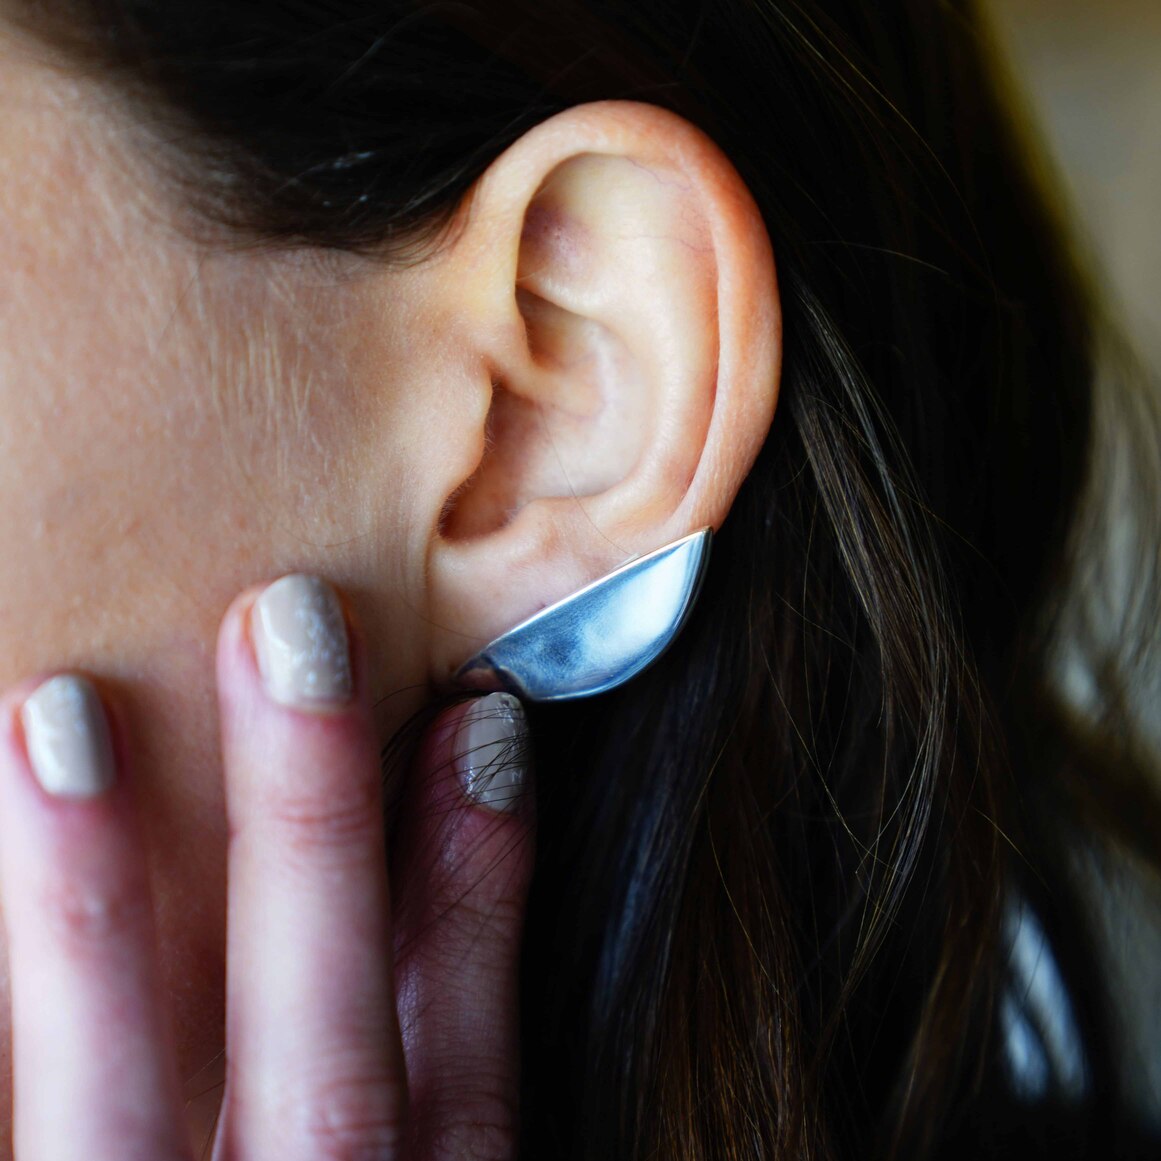 earlobe earrings